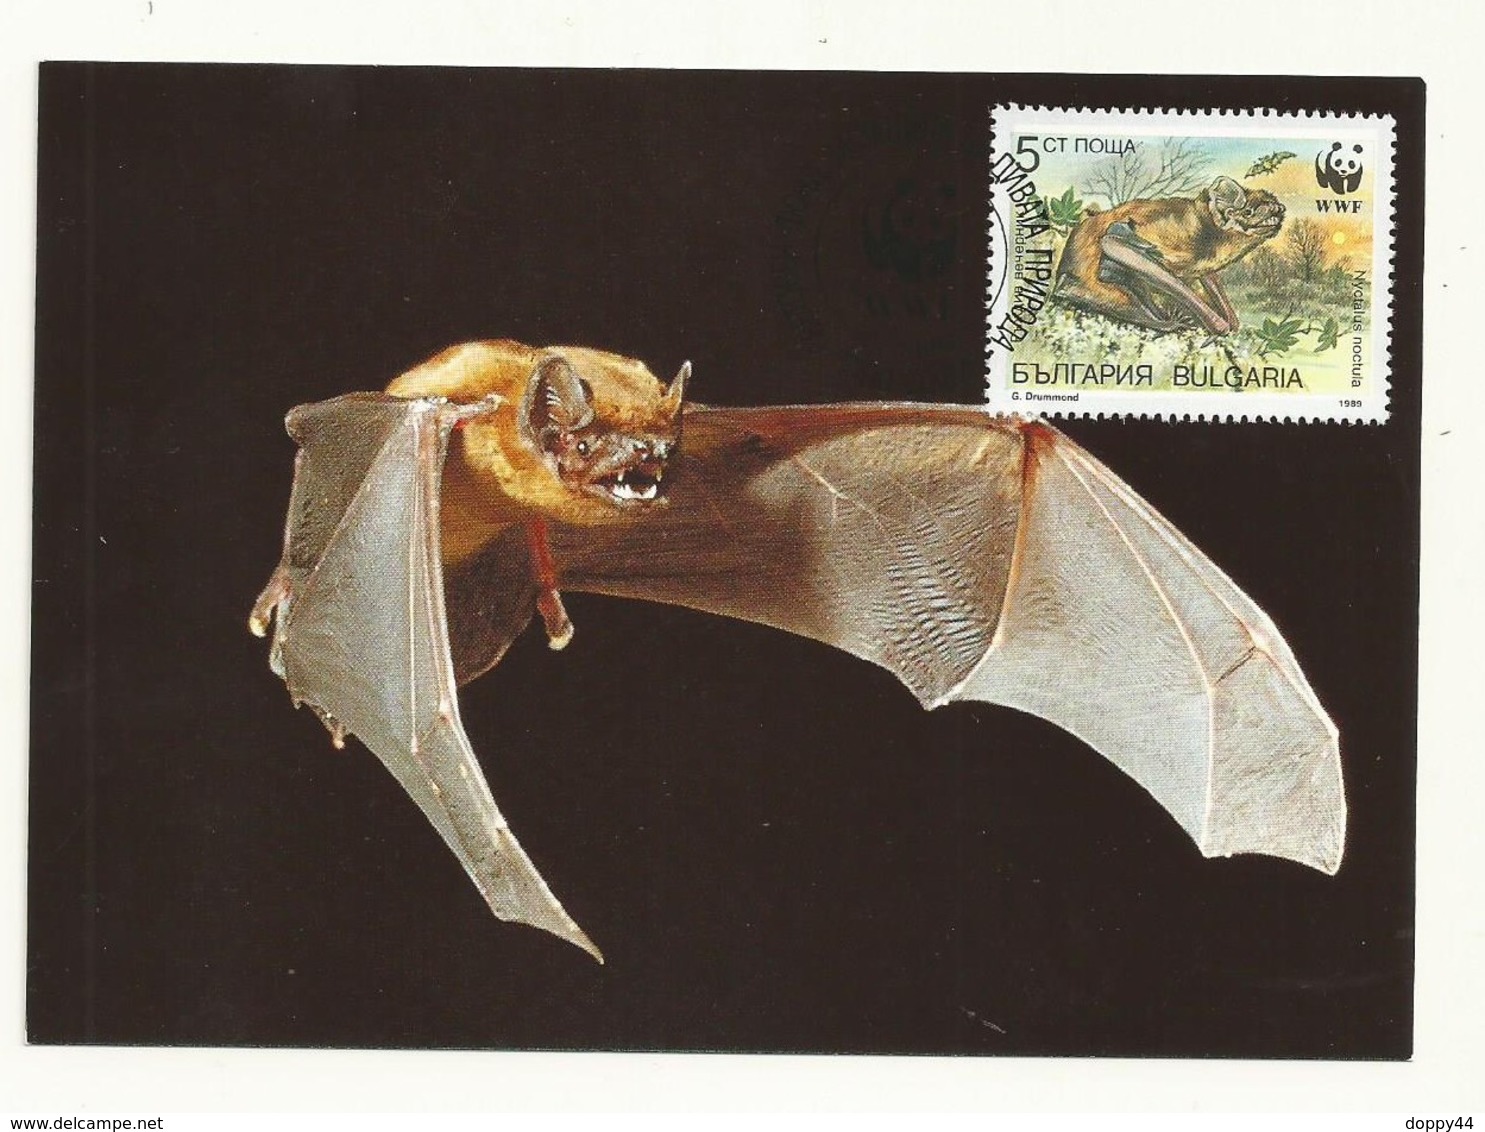 WWF  CARTE MAXIMUM  CHAUVE SOURIS TP  BULGARIE - Bats